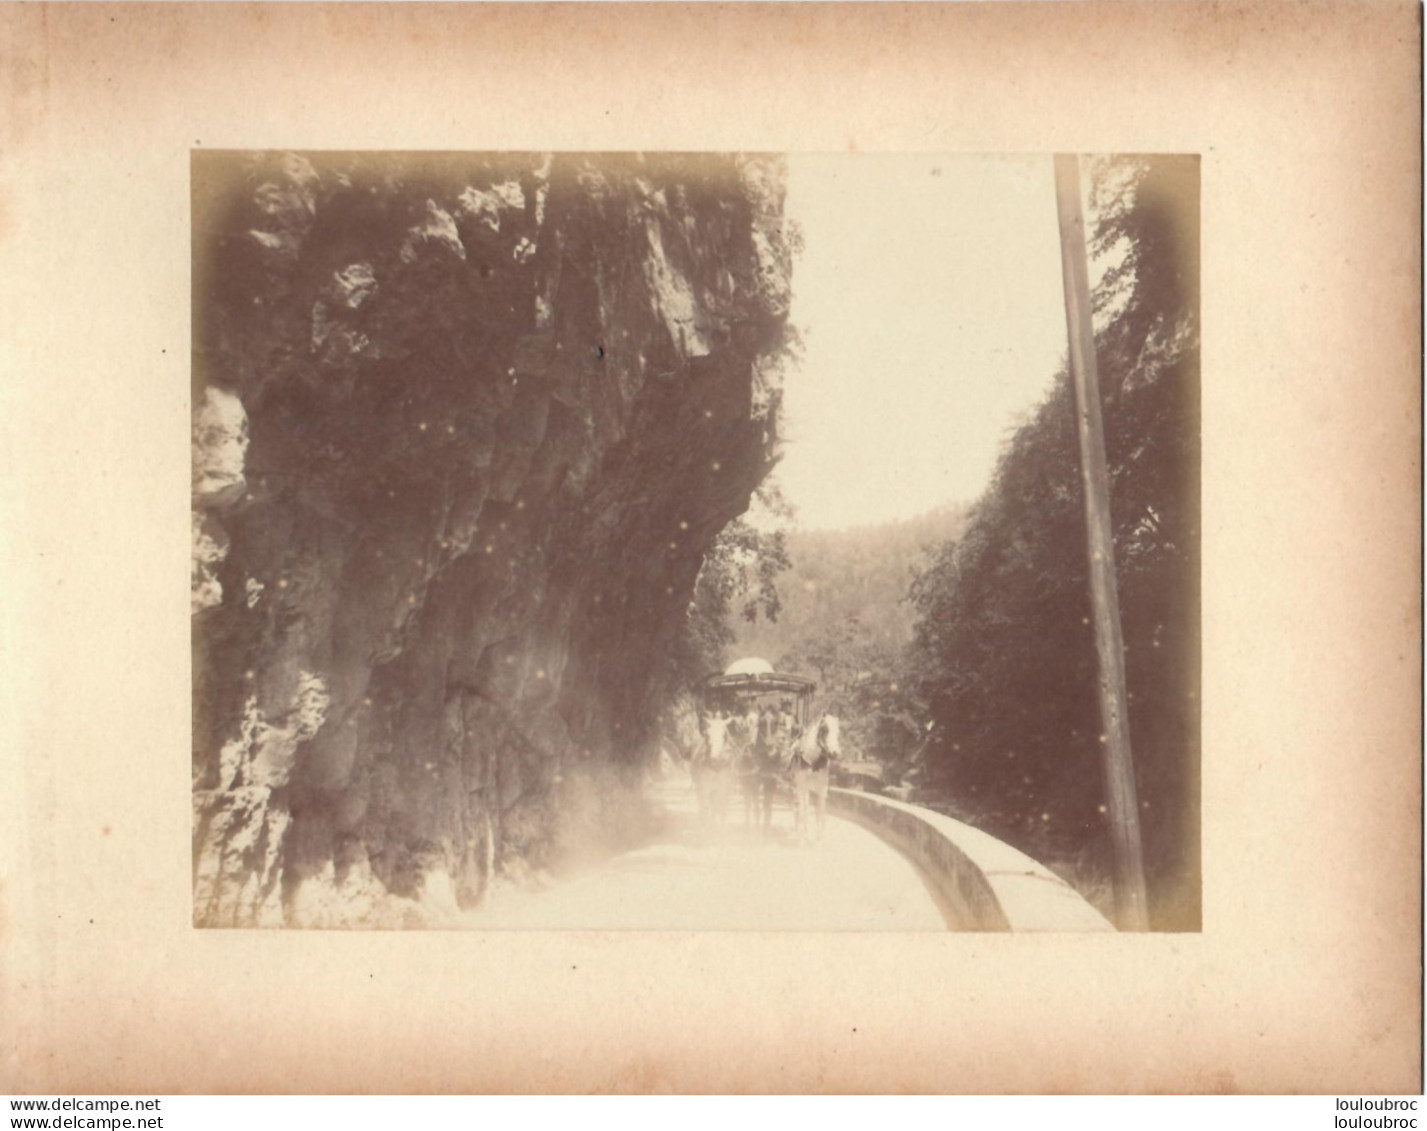 ROUTE DE LA GRANDE CHARTREUSE ENTREE DU DESERT ATTELAGE FIN 19em PHOTO ORIGINALE 17x13CM COLLEE SUR CARTON DE 23x18cm - Alte (vor 1900)